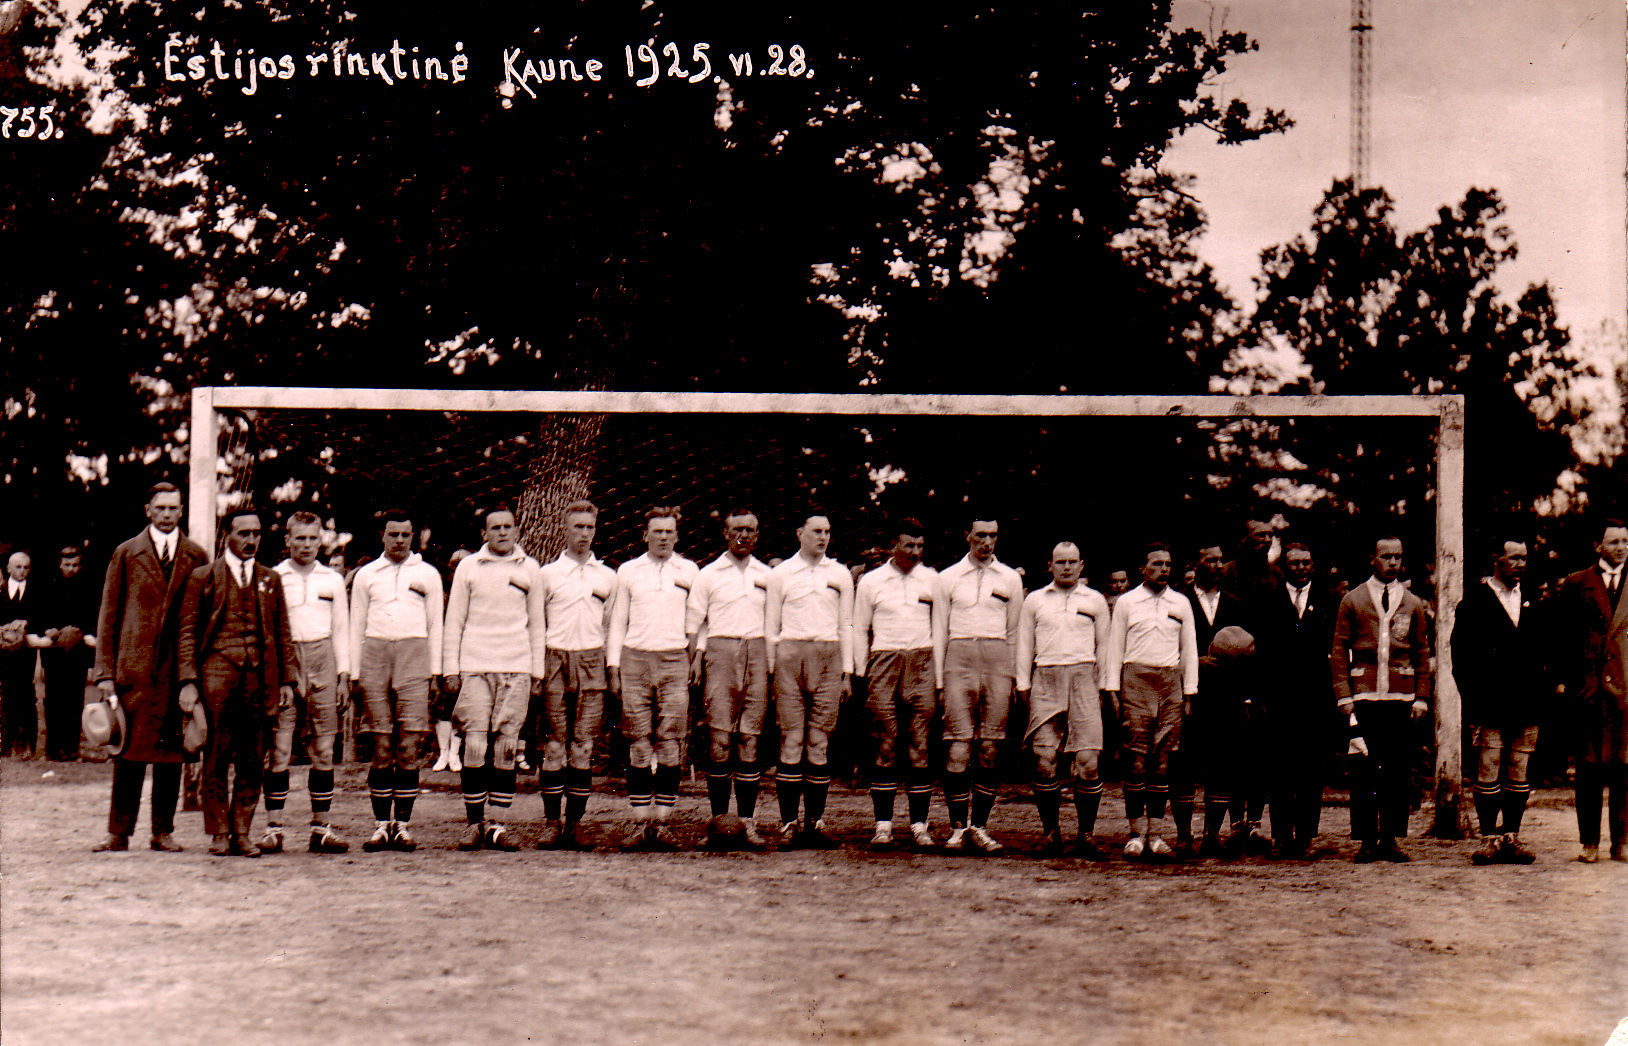 Leedu-Eesti maavõistlused jalgpallis Kaunases 1925